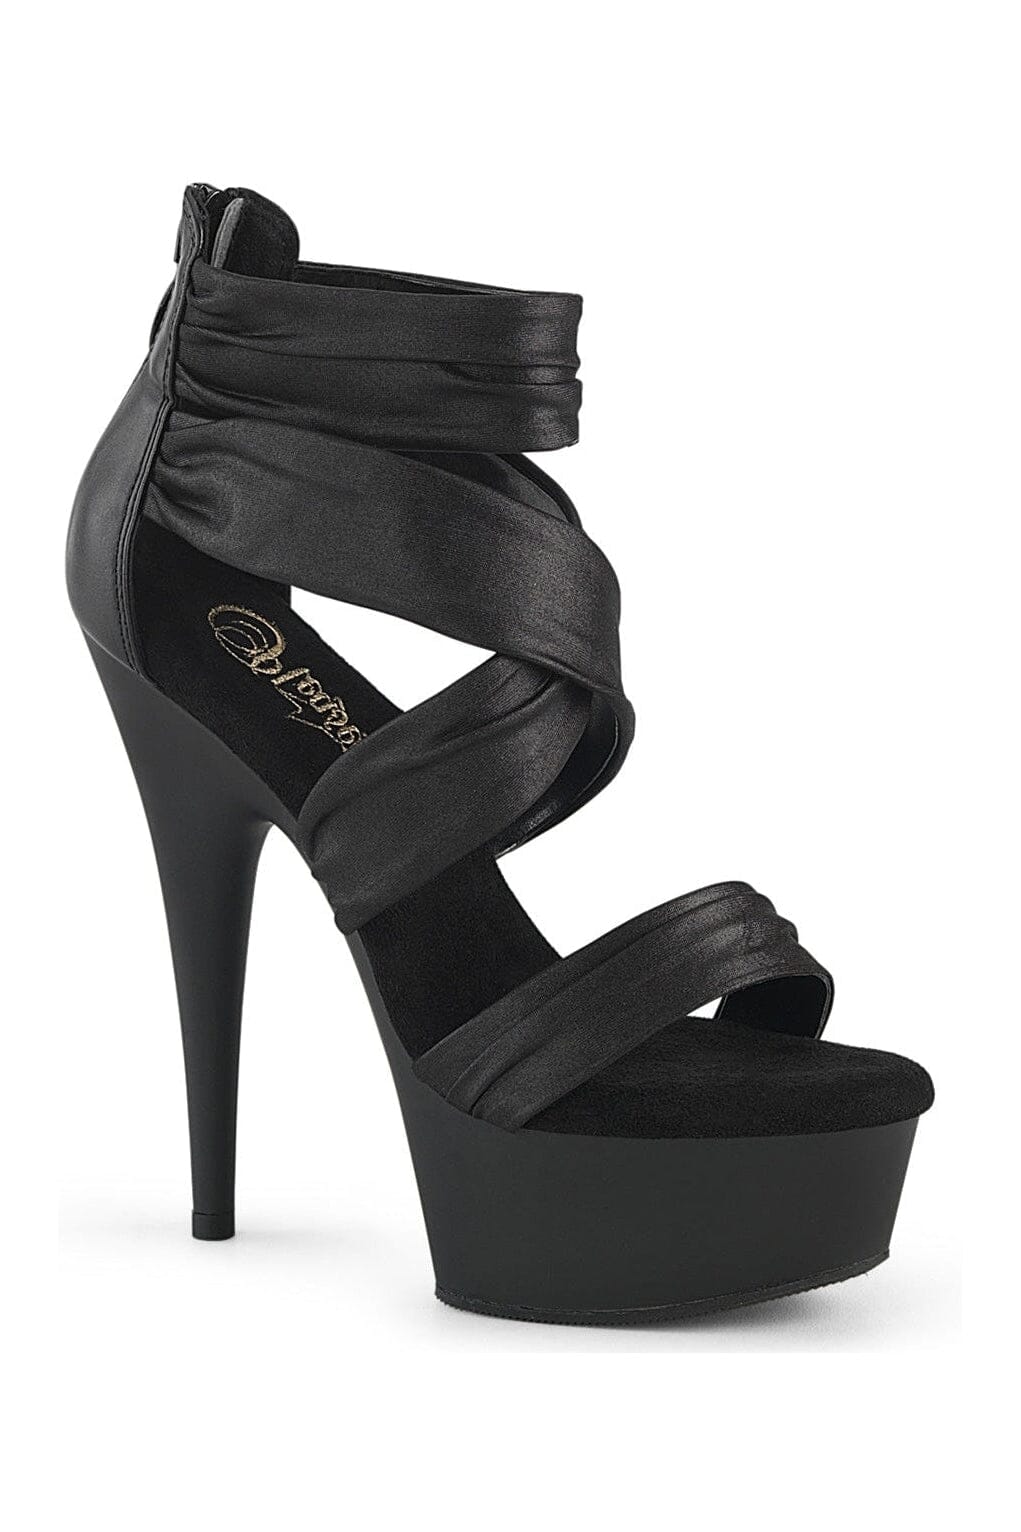 DELIGHT-620 Black Faux Leather Sandal-Sandals-Pleaser-Black-10-Faux Leather-SEXYSHOES.COM